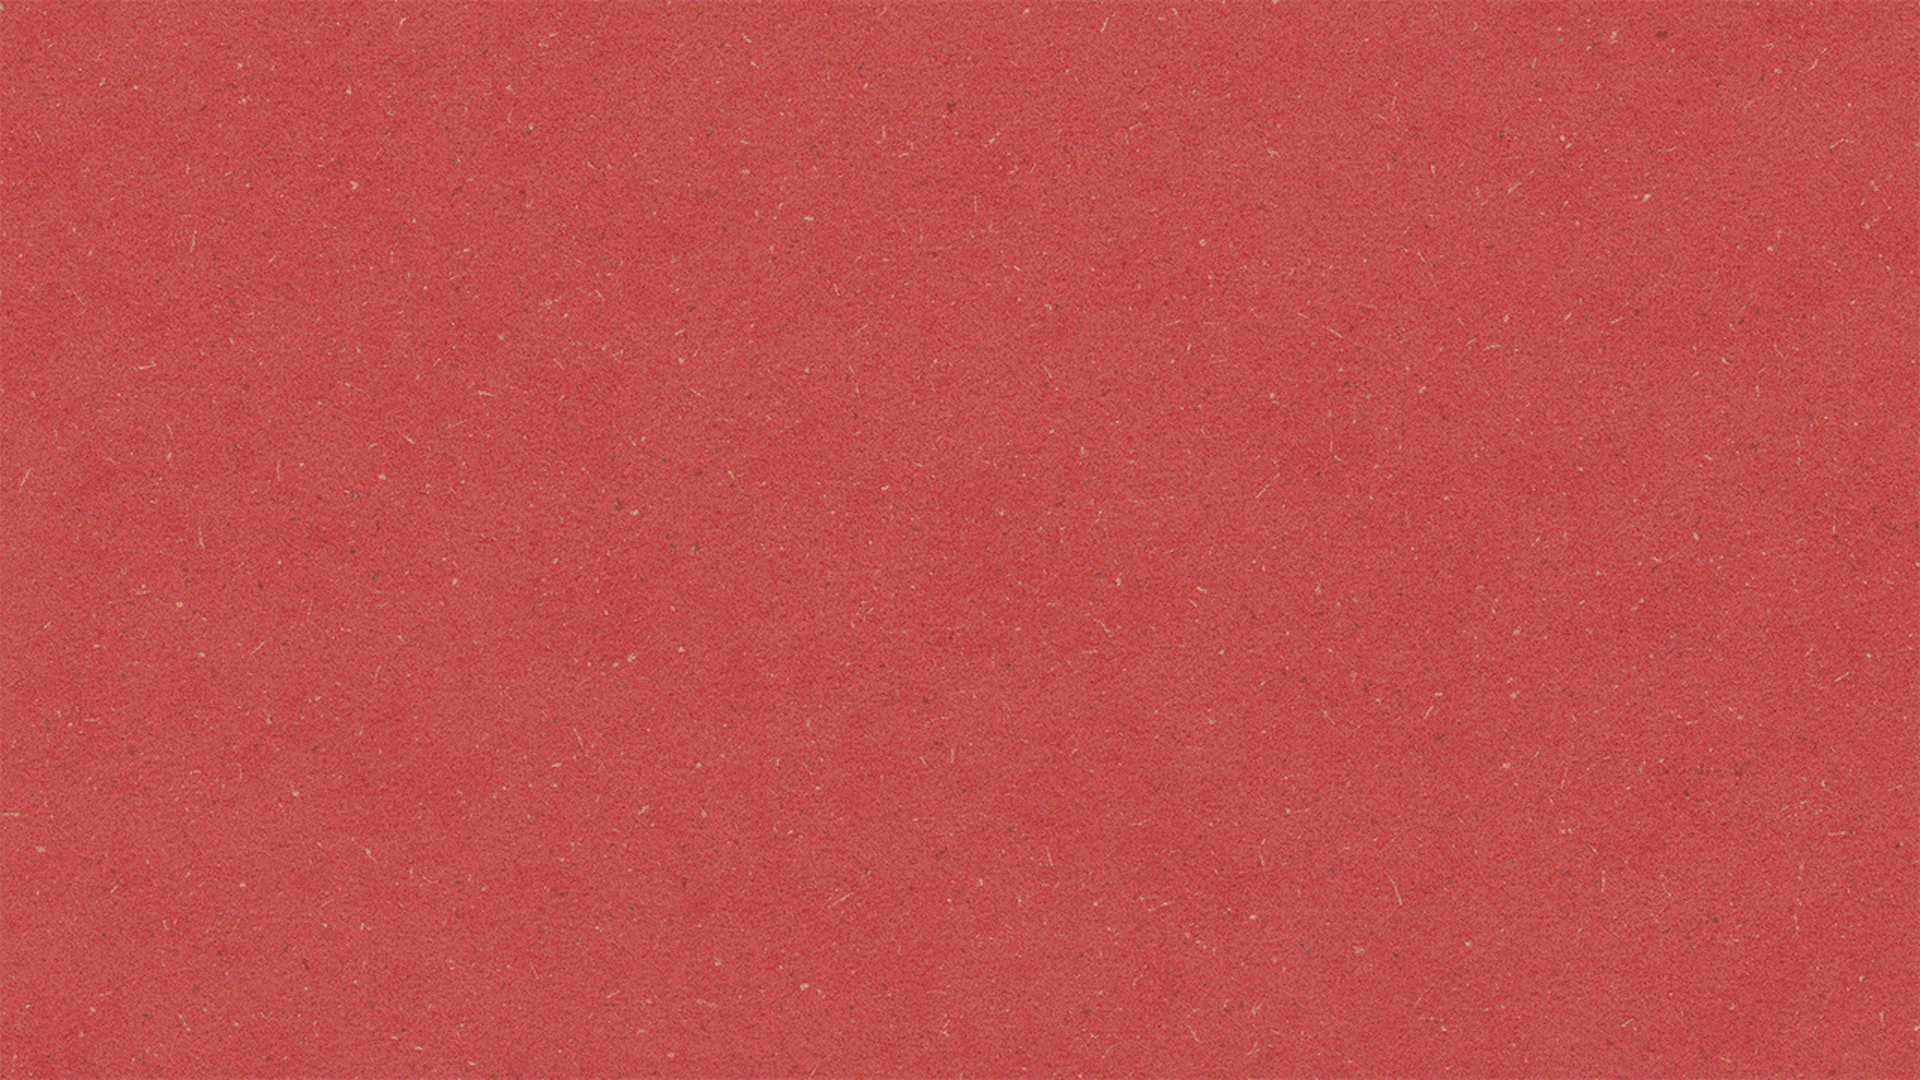 Wineo Organic Floor 1500 trucioli rosso ciliegia (PLR387C)